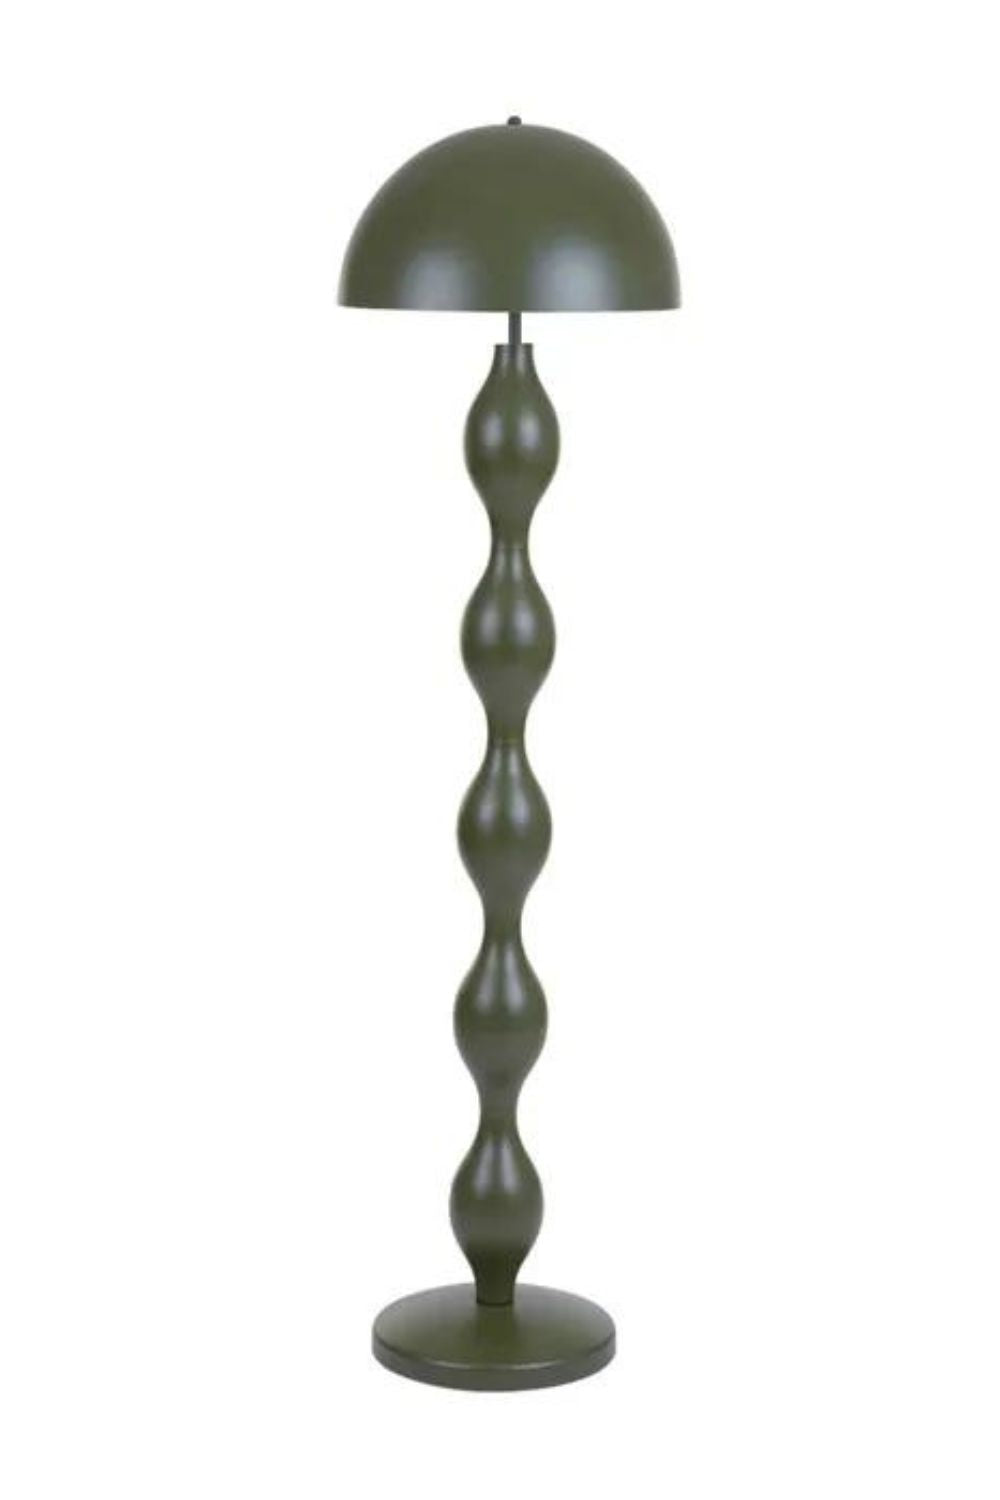 LUCCA METAL FLOOR LAMP - OLIVE